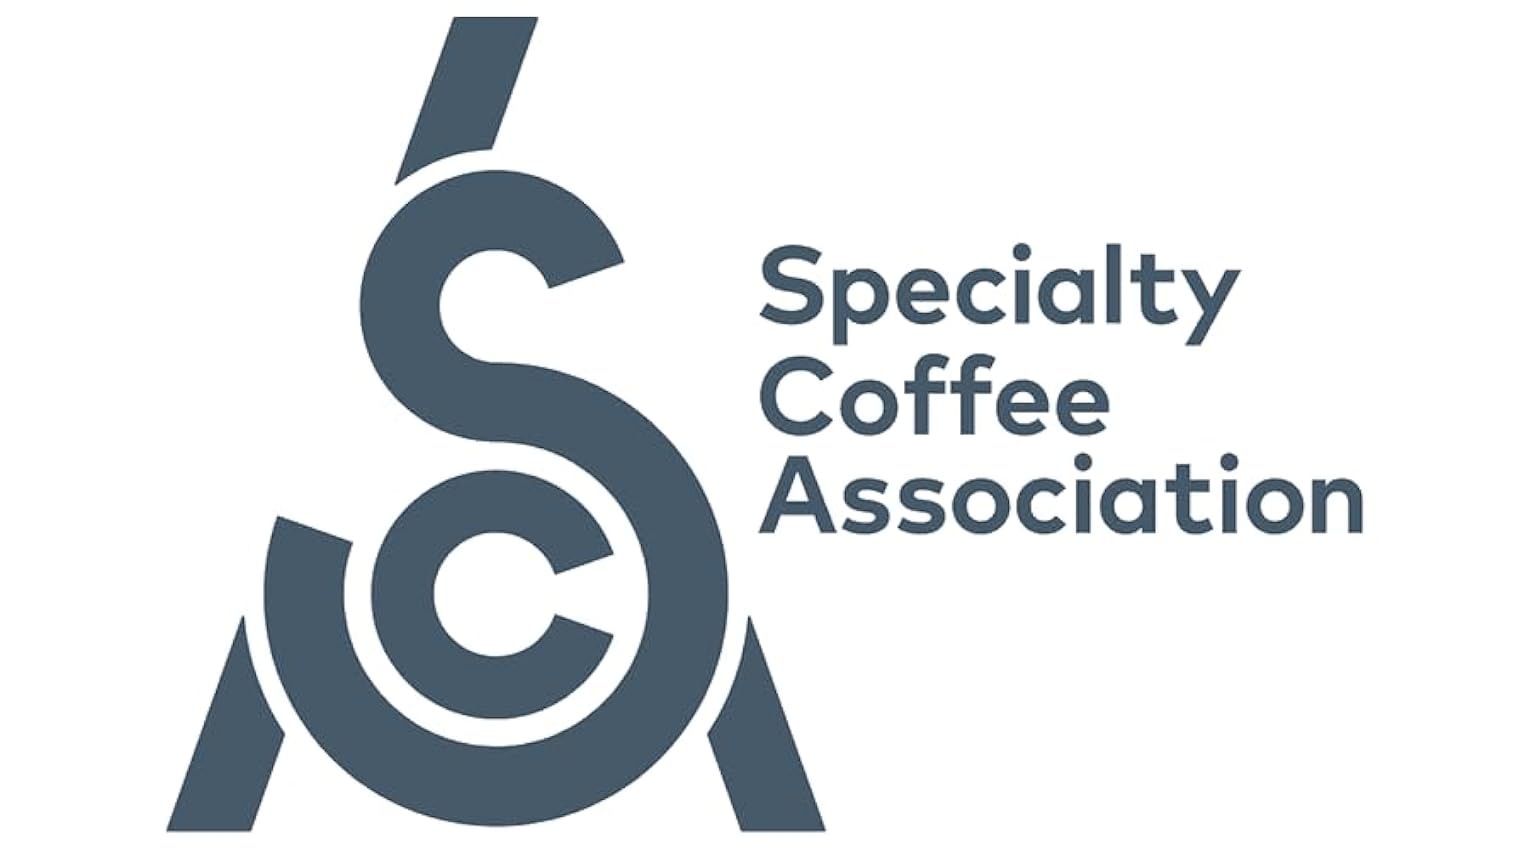 Cafe en Grano 1kg Espresso - Gran Aroma Intenso -Tueste Natural -Calificación de 79 Puntos por la Specialty Coffee Association (SCA) – por su sabor y aroma O4VAR8uW